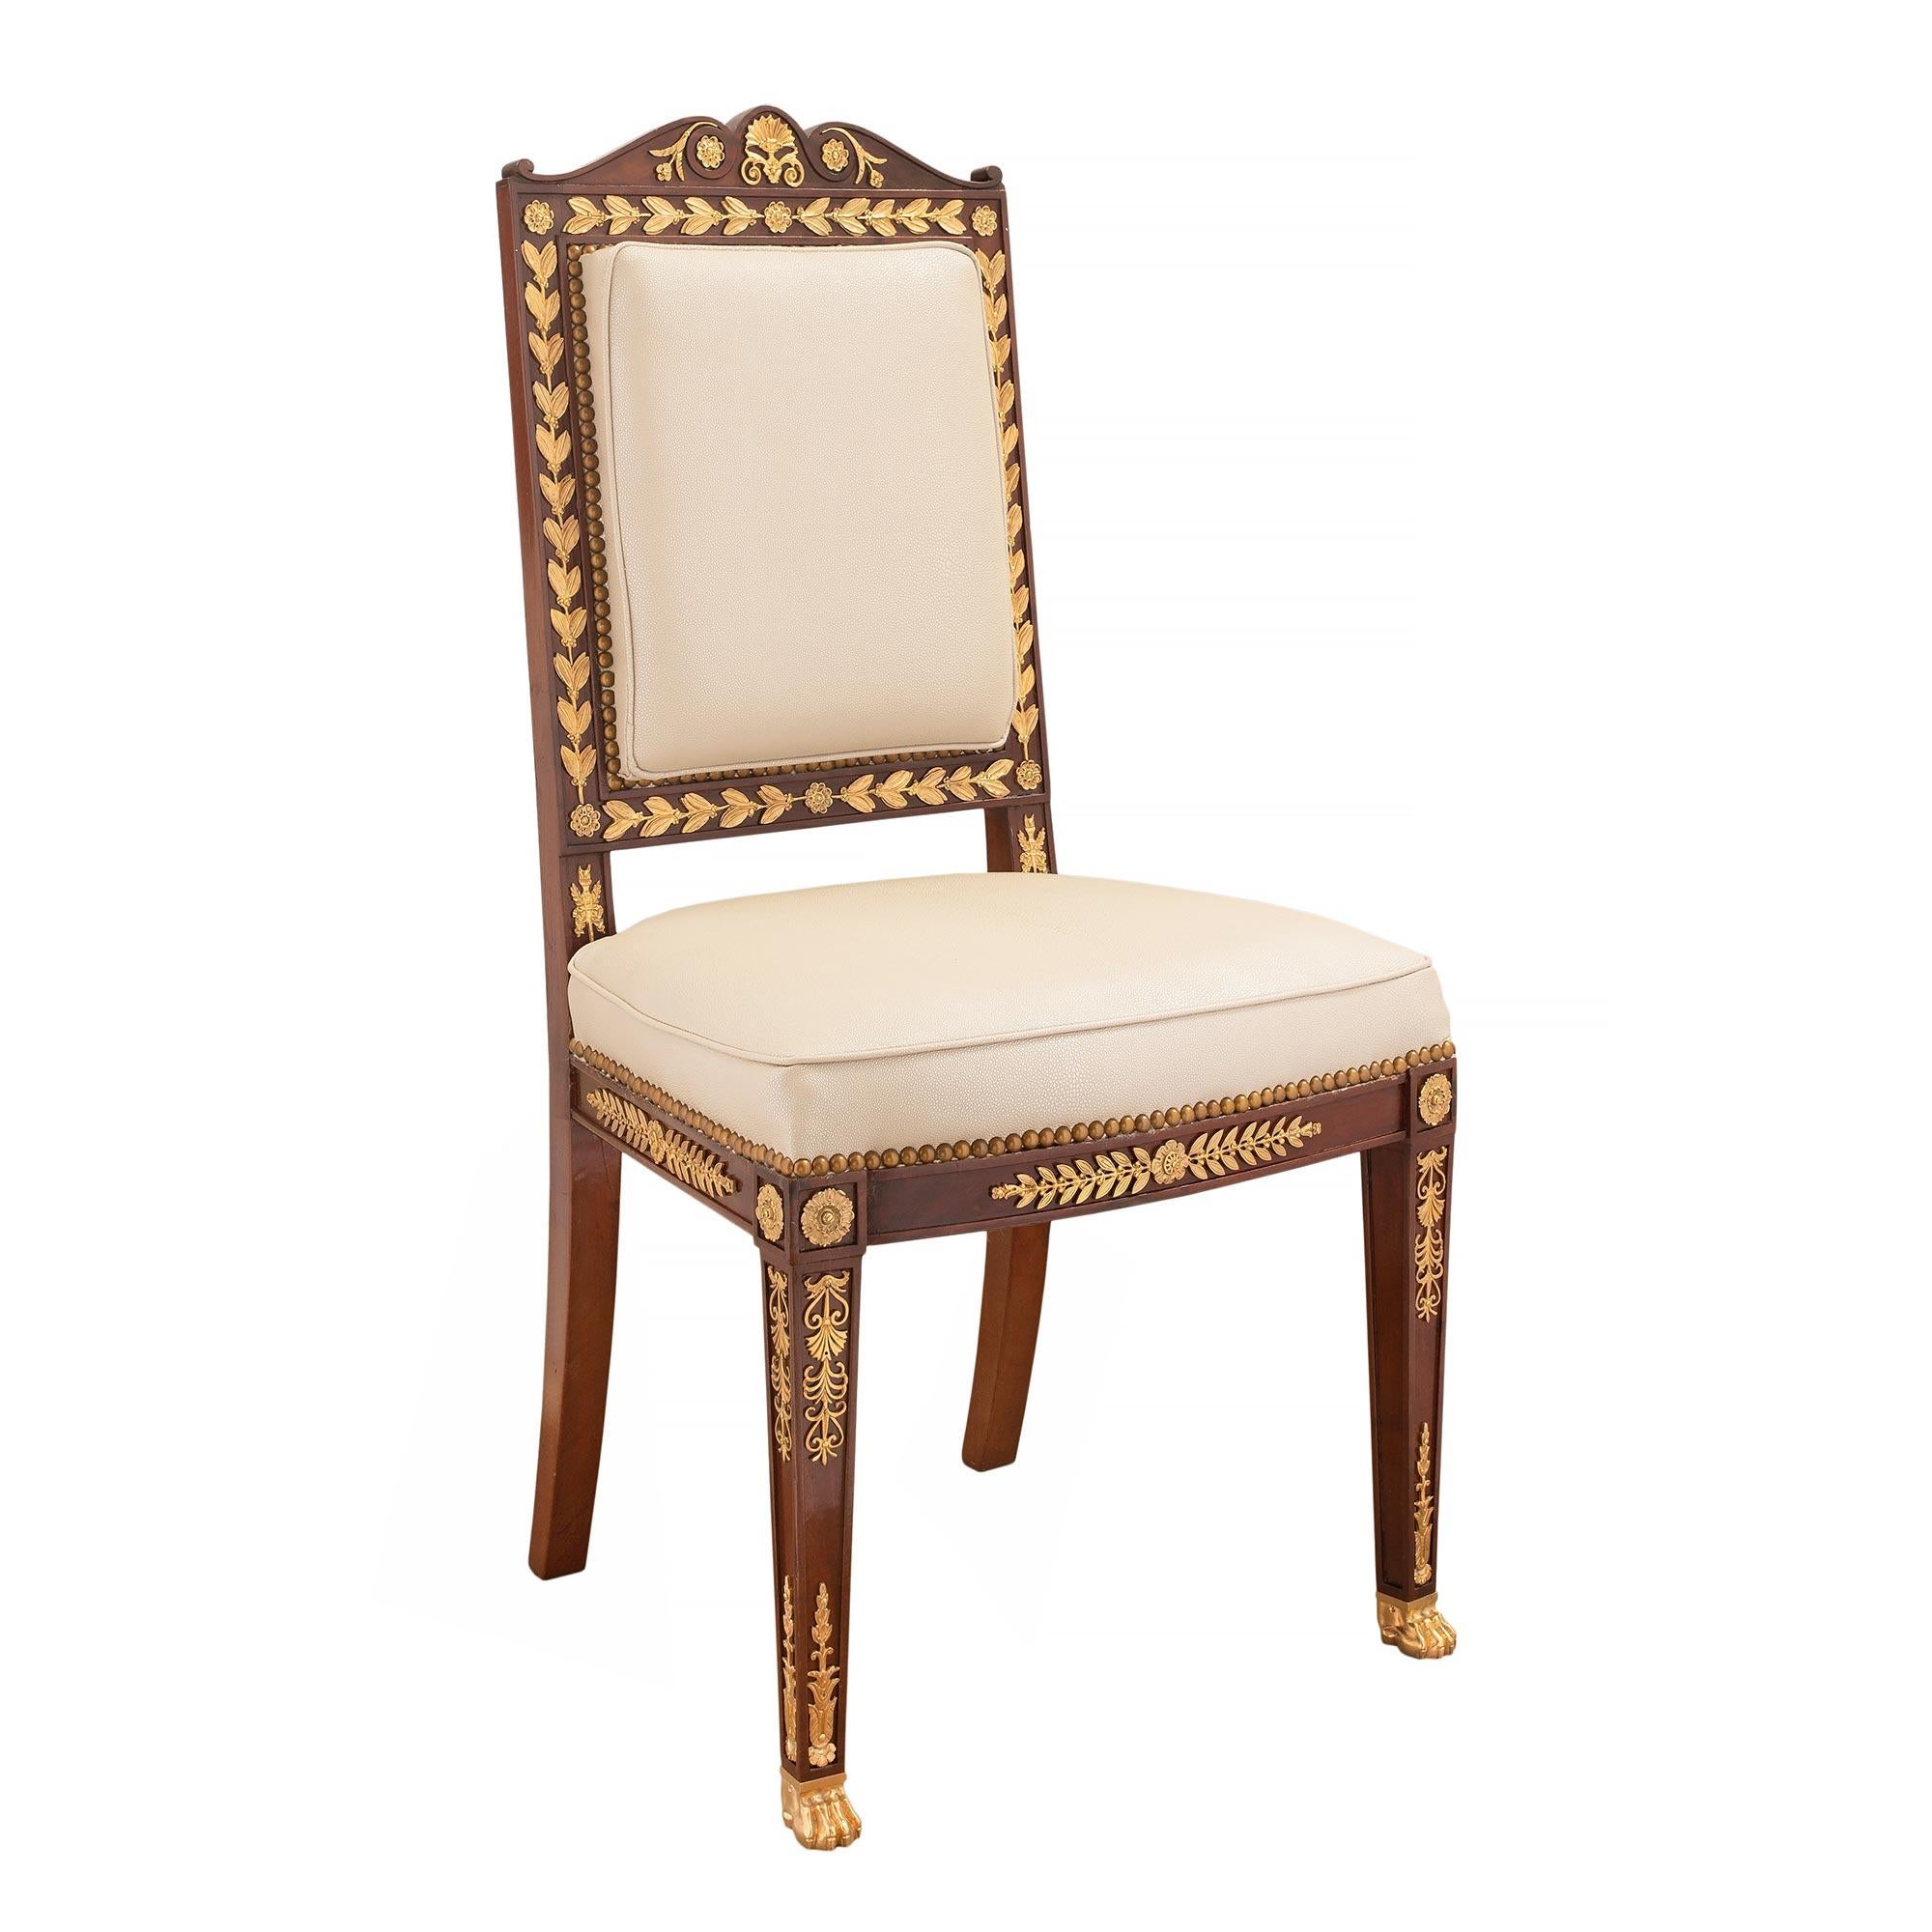 Ein auffälliger französischer Empire-Sessel aus dem 19. Jahrhundert mit Ormolu und massivem Mahagoni. Der Stuhl steht auf hübschen ormolierten Tatzenfüßen und quadratischen, konischen Beinen. Jedes Bein ist mit dekorativen Vertiefungen versehen, in